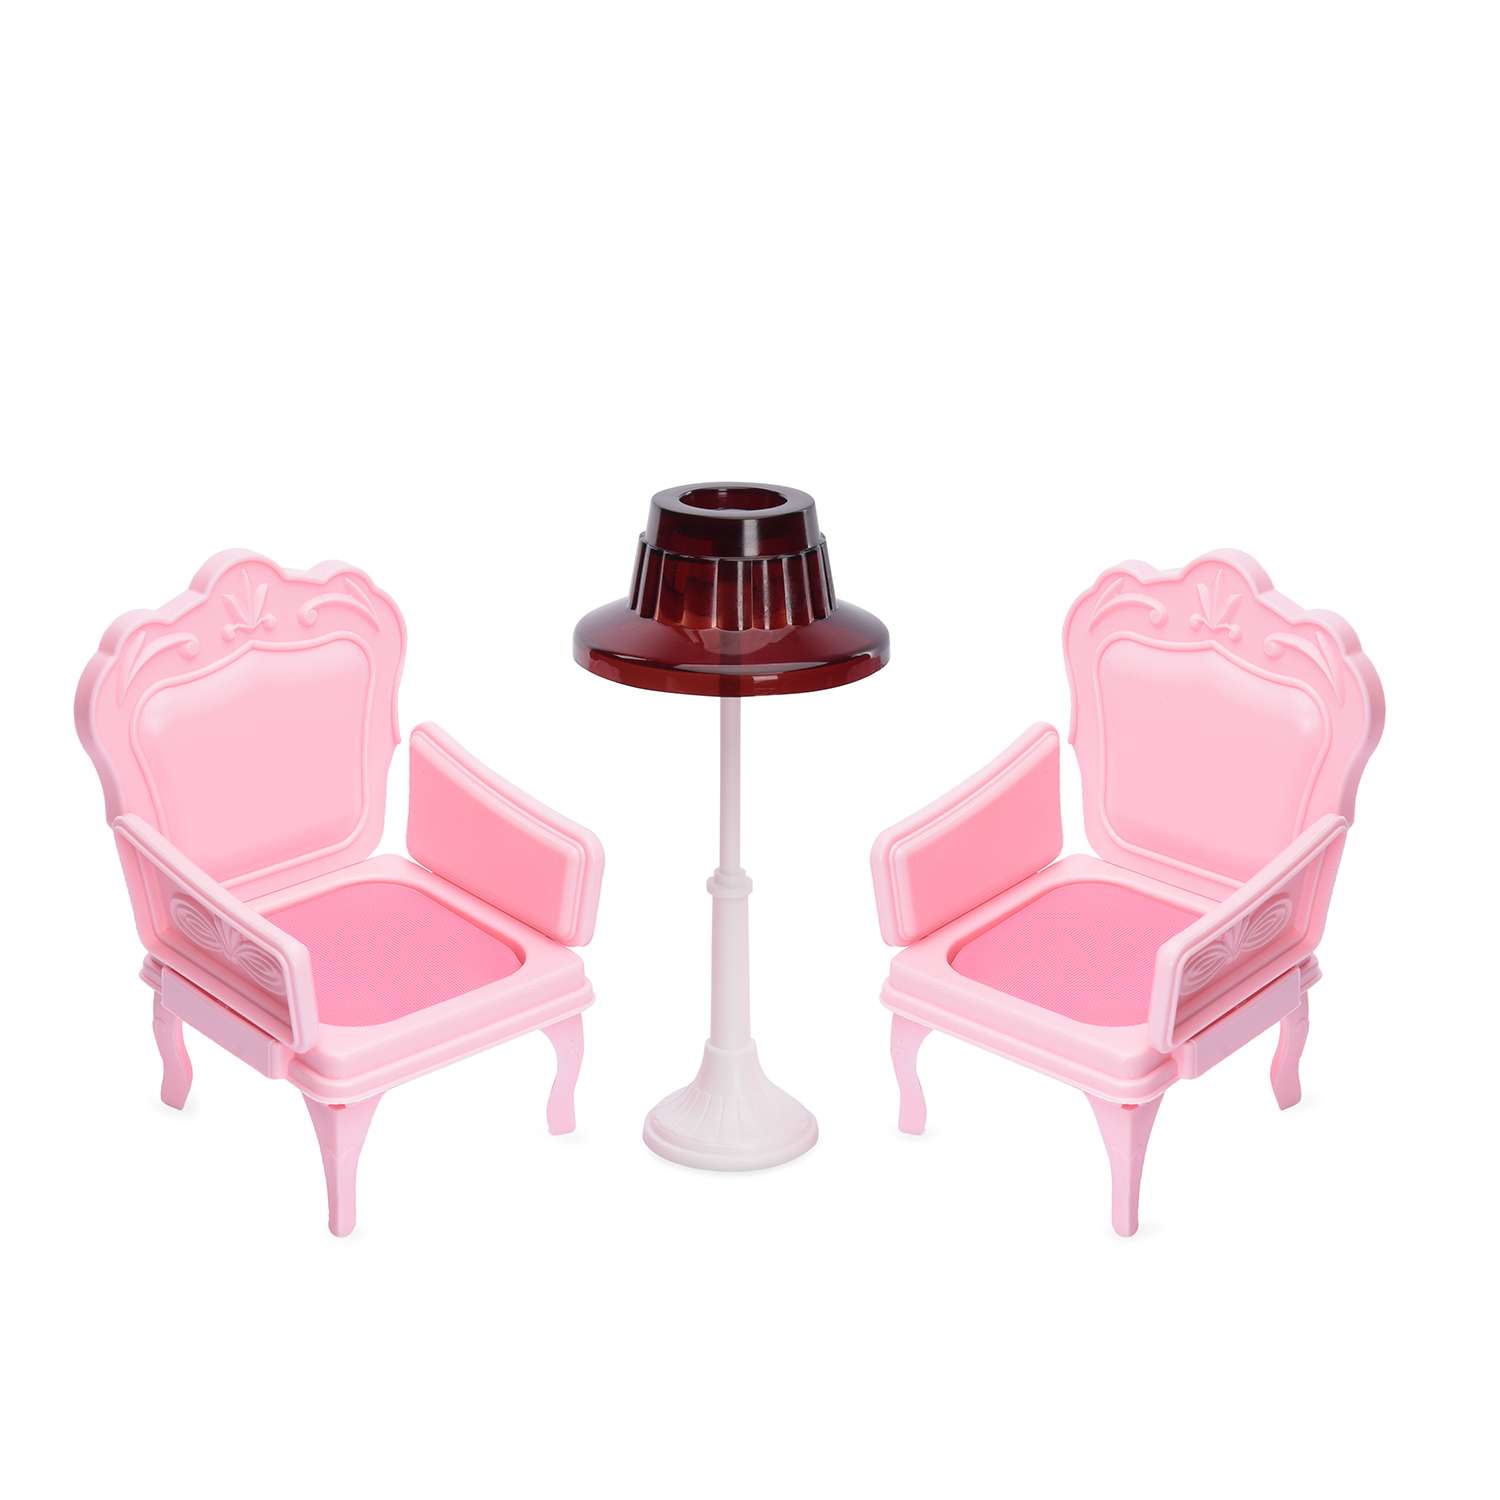 Набор мебели Огонек кресла с торшером для куклы розовые С-1393 - фото 1